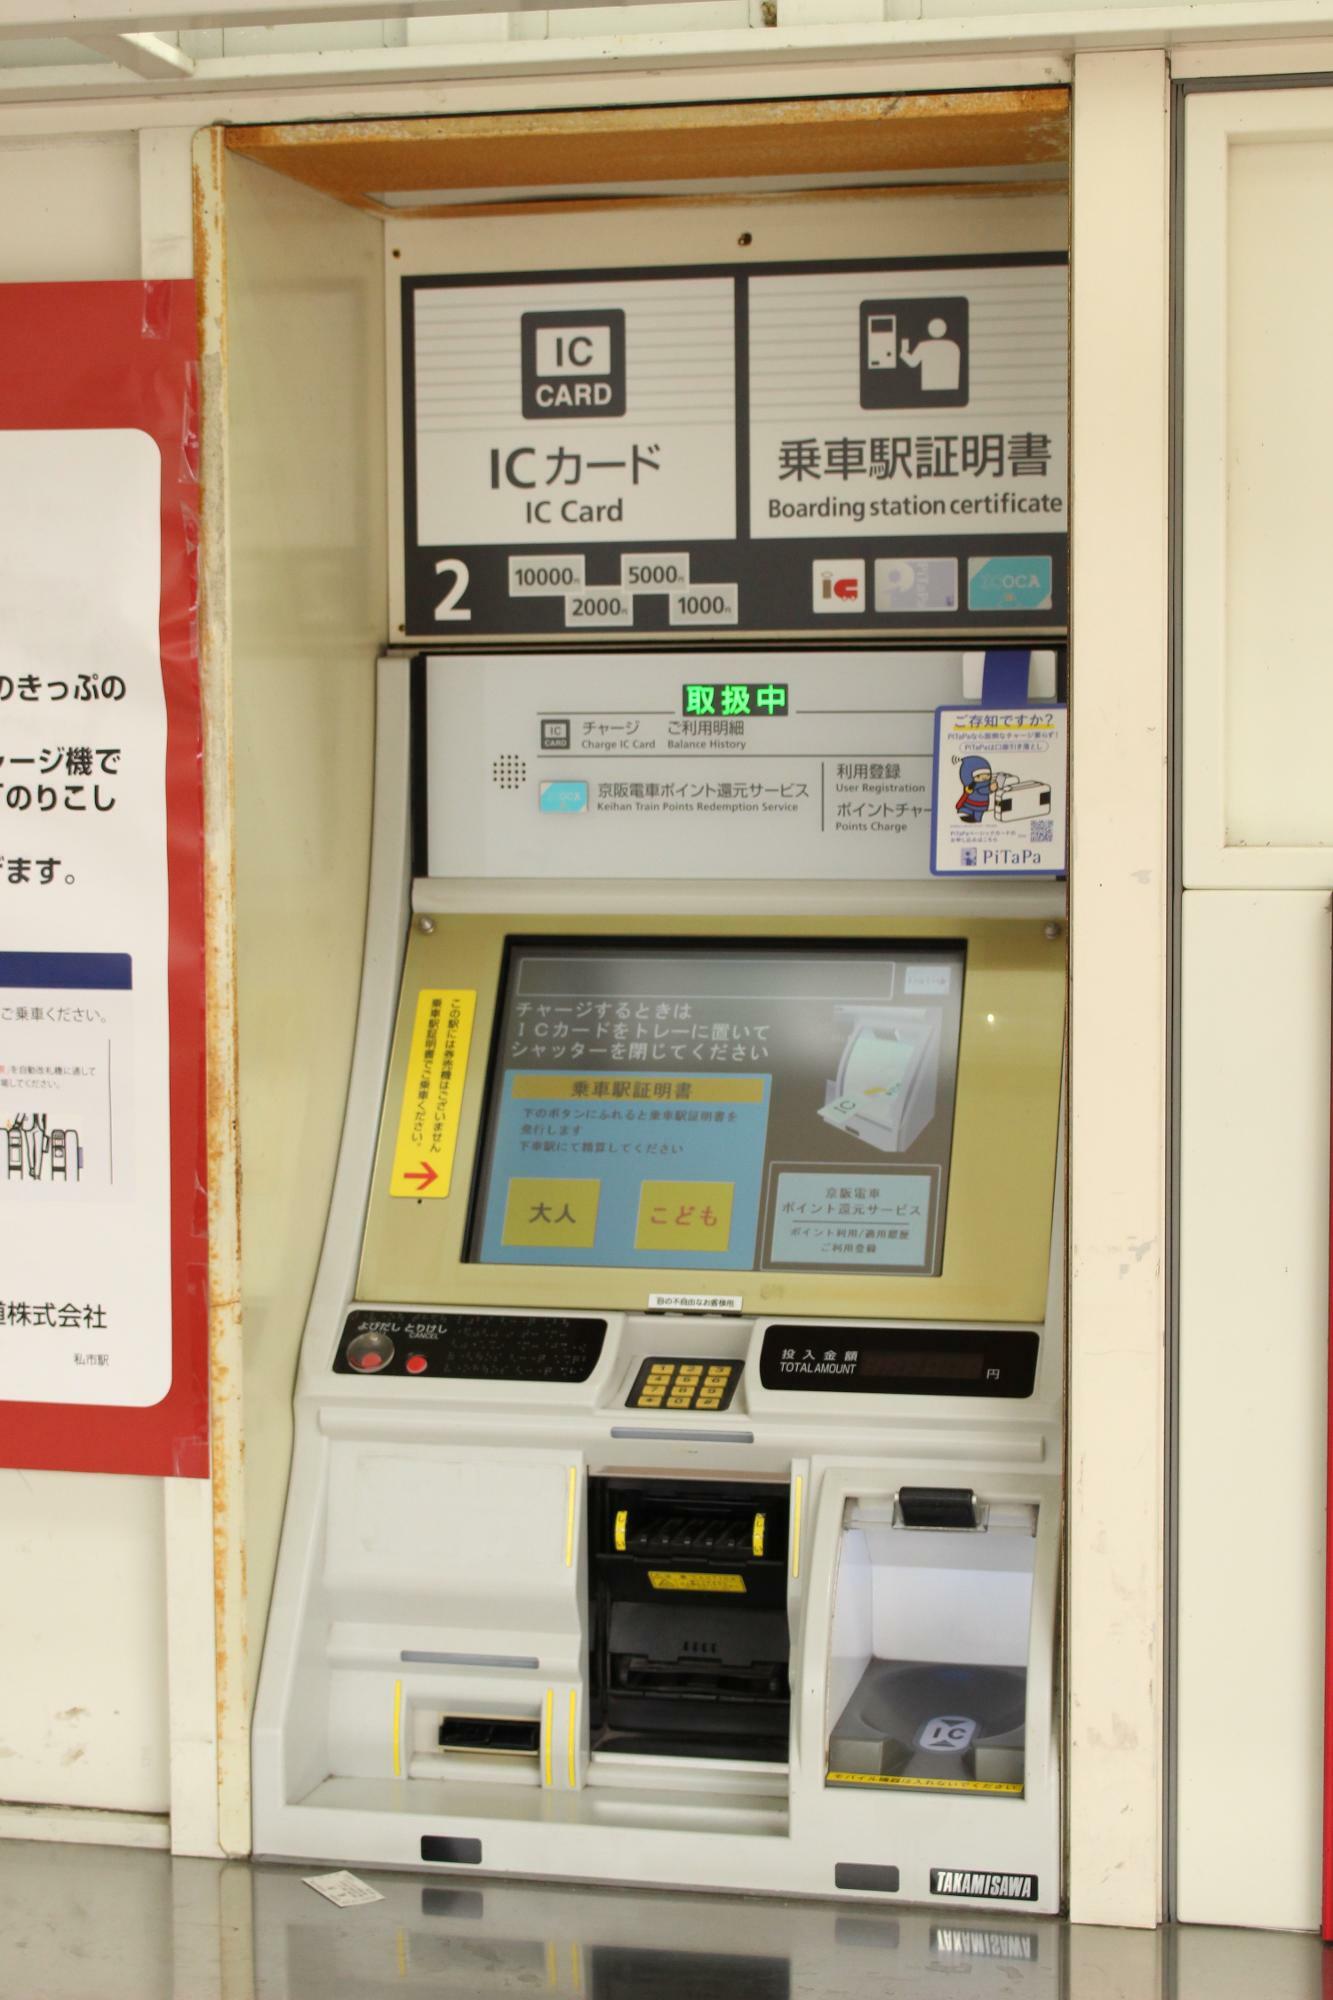 ICカードチャージ機のモニター上に表示されている「乗車駅証明書」の発行ボタン